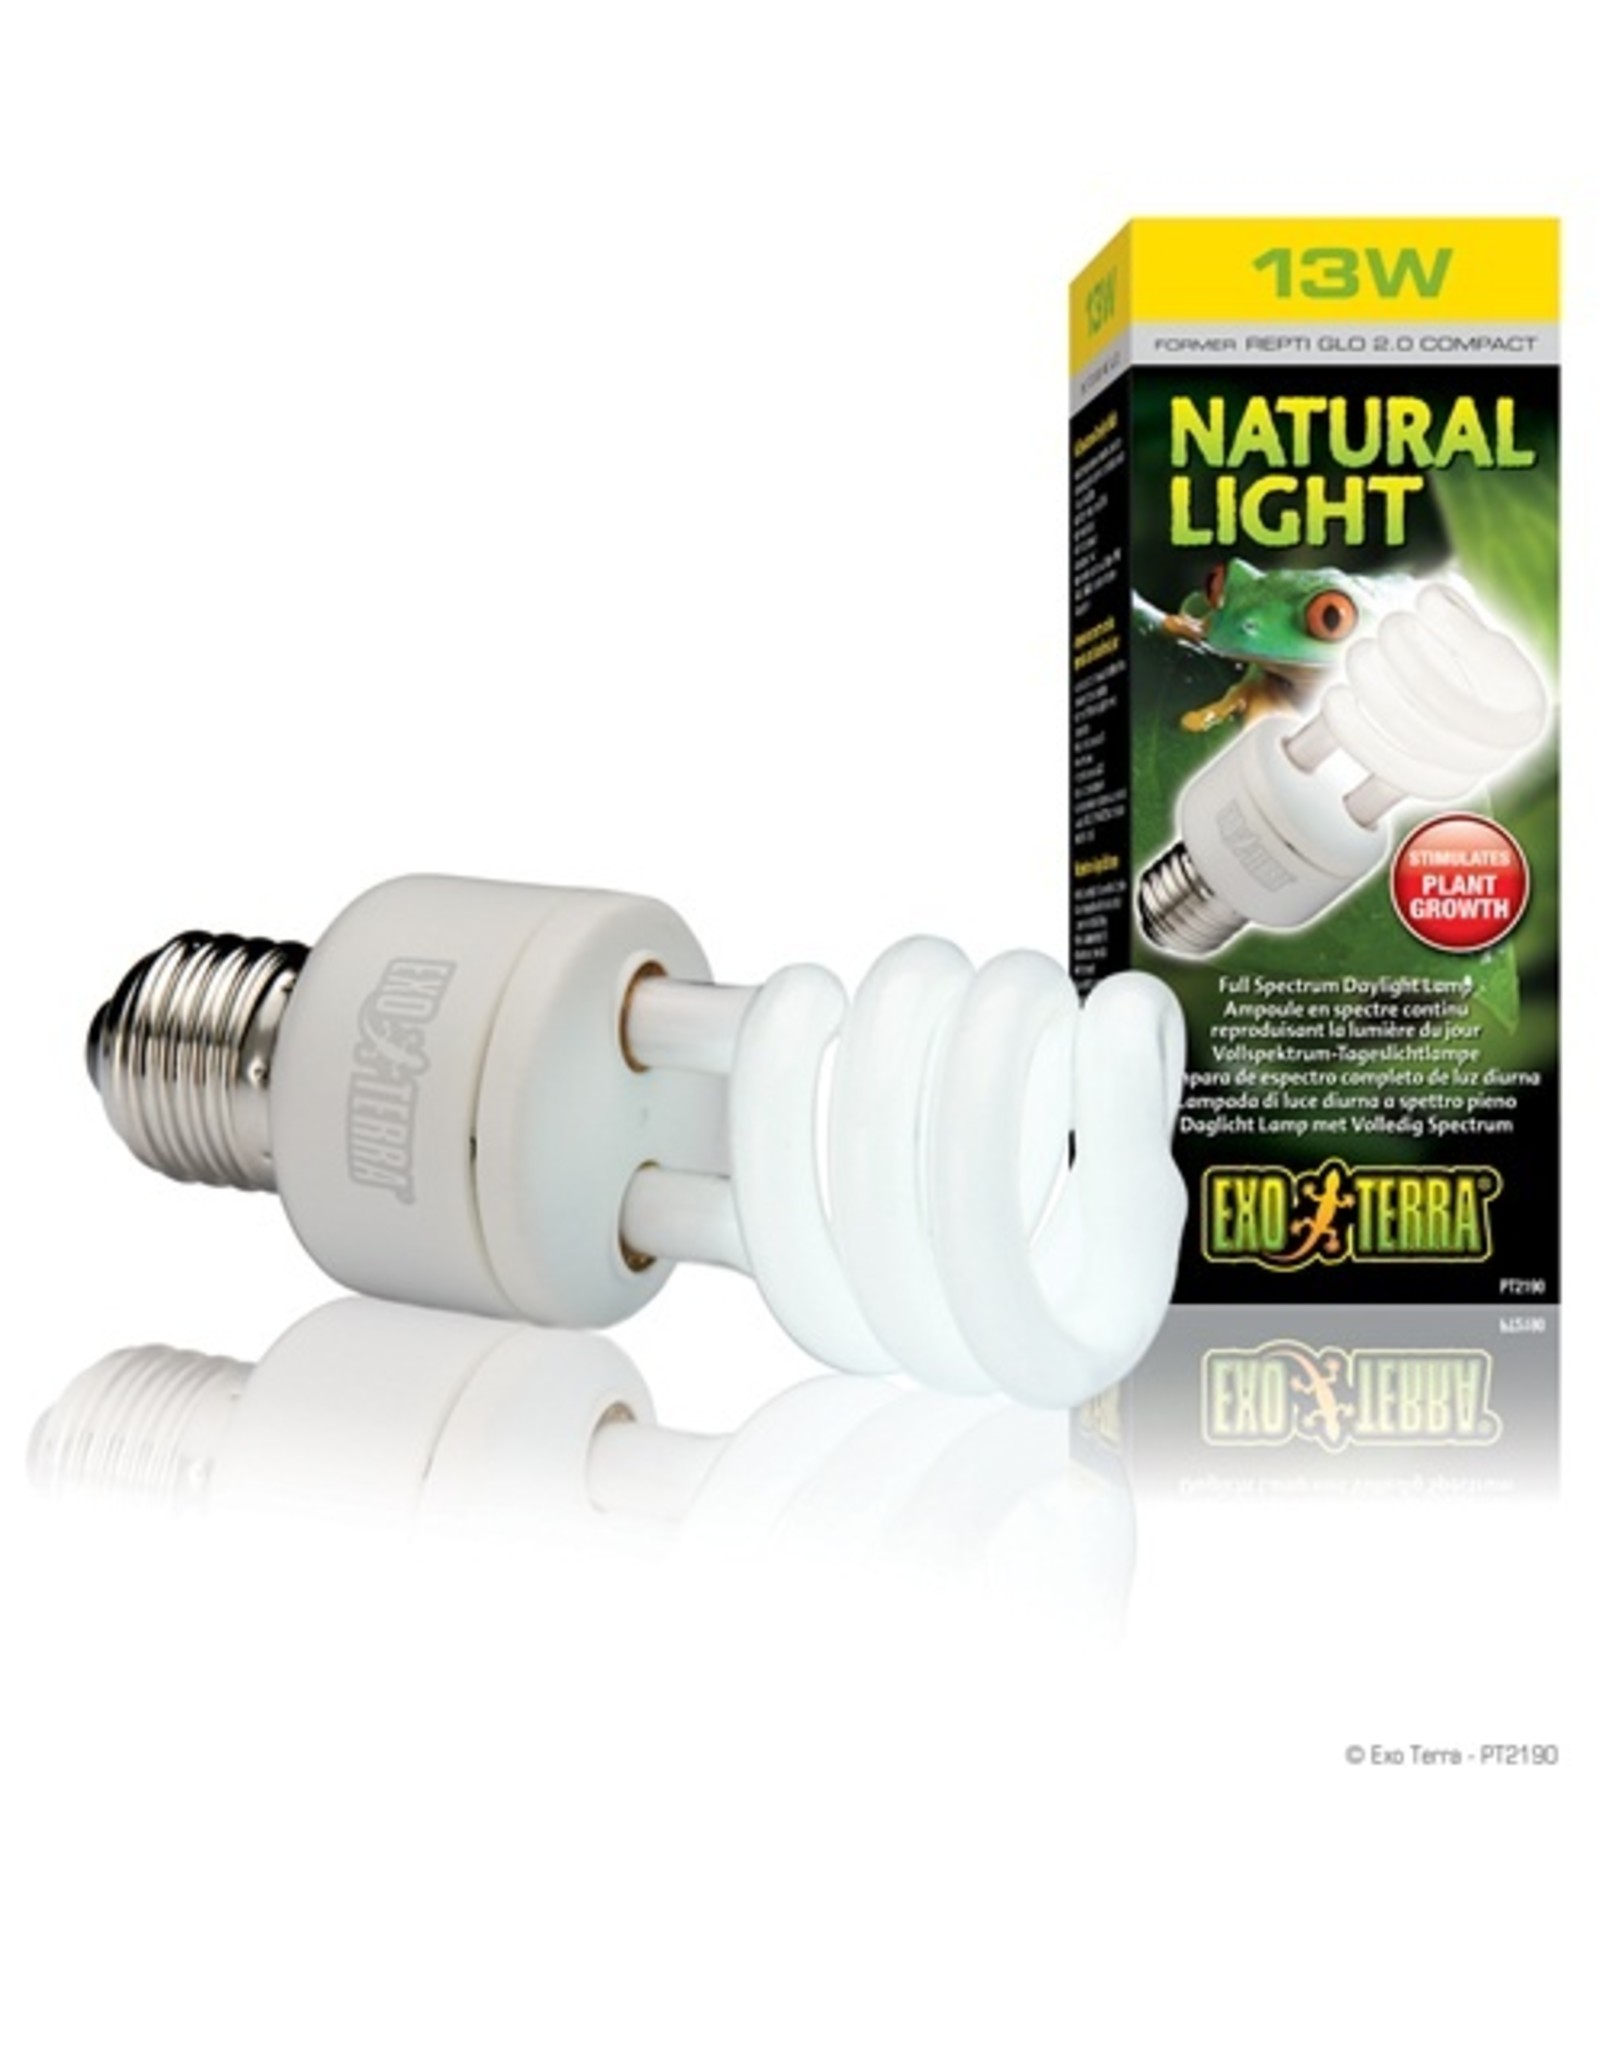 Exo Terra EXO TERRA Natural Light Spectrum Bulb 120v